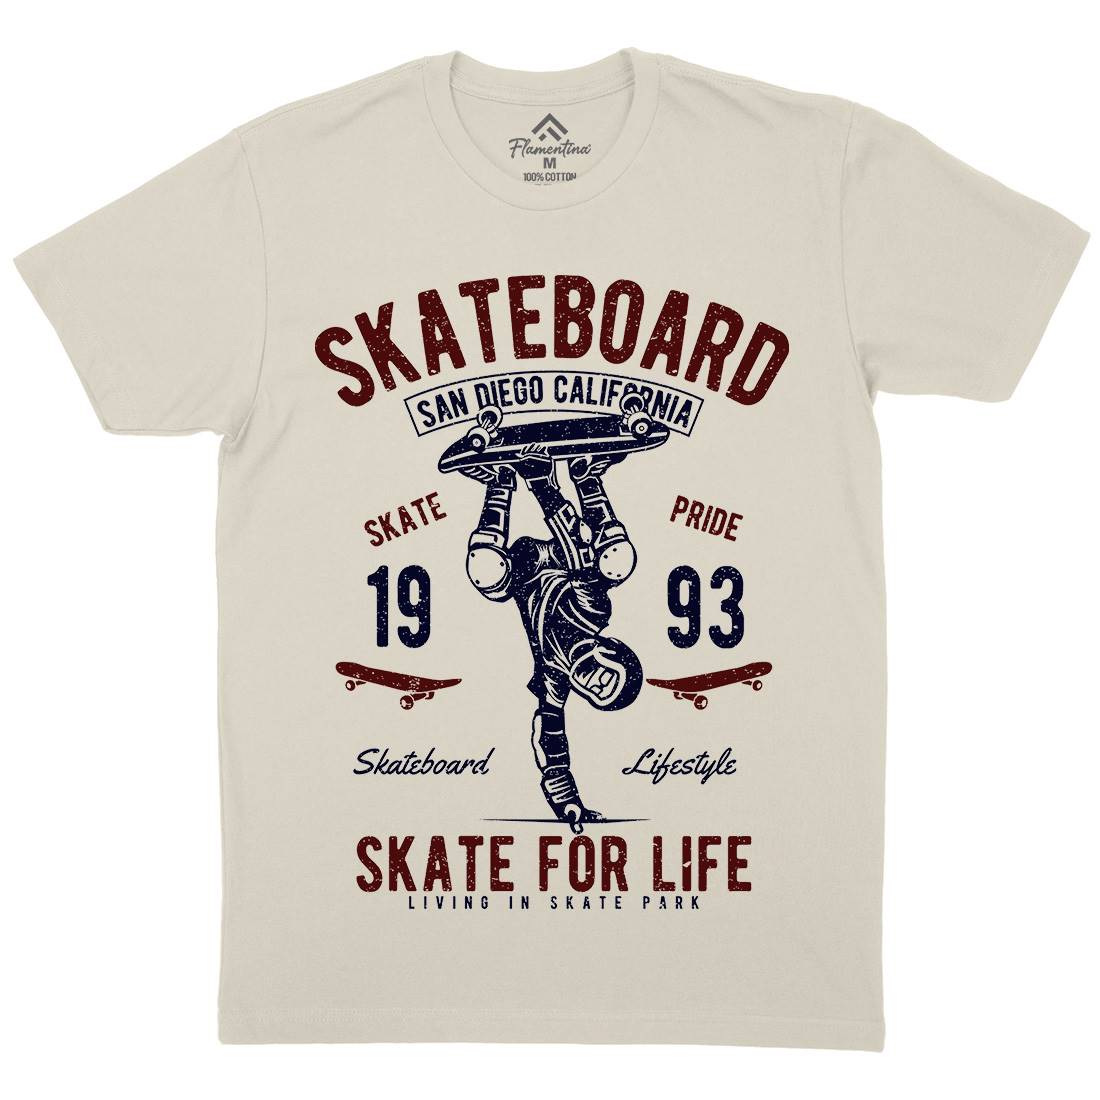 Skate For Life Mens Organic Crew Neck T-Shirt Skate A143